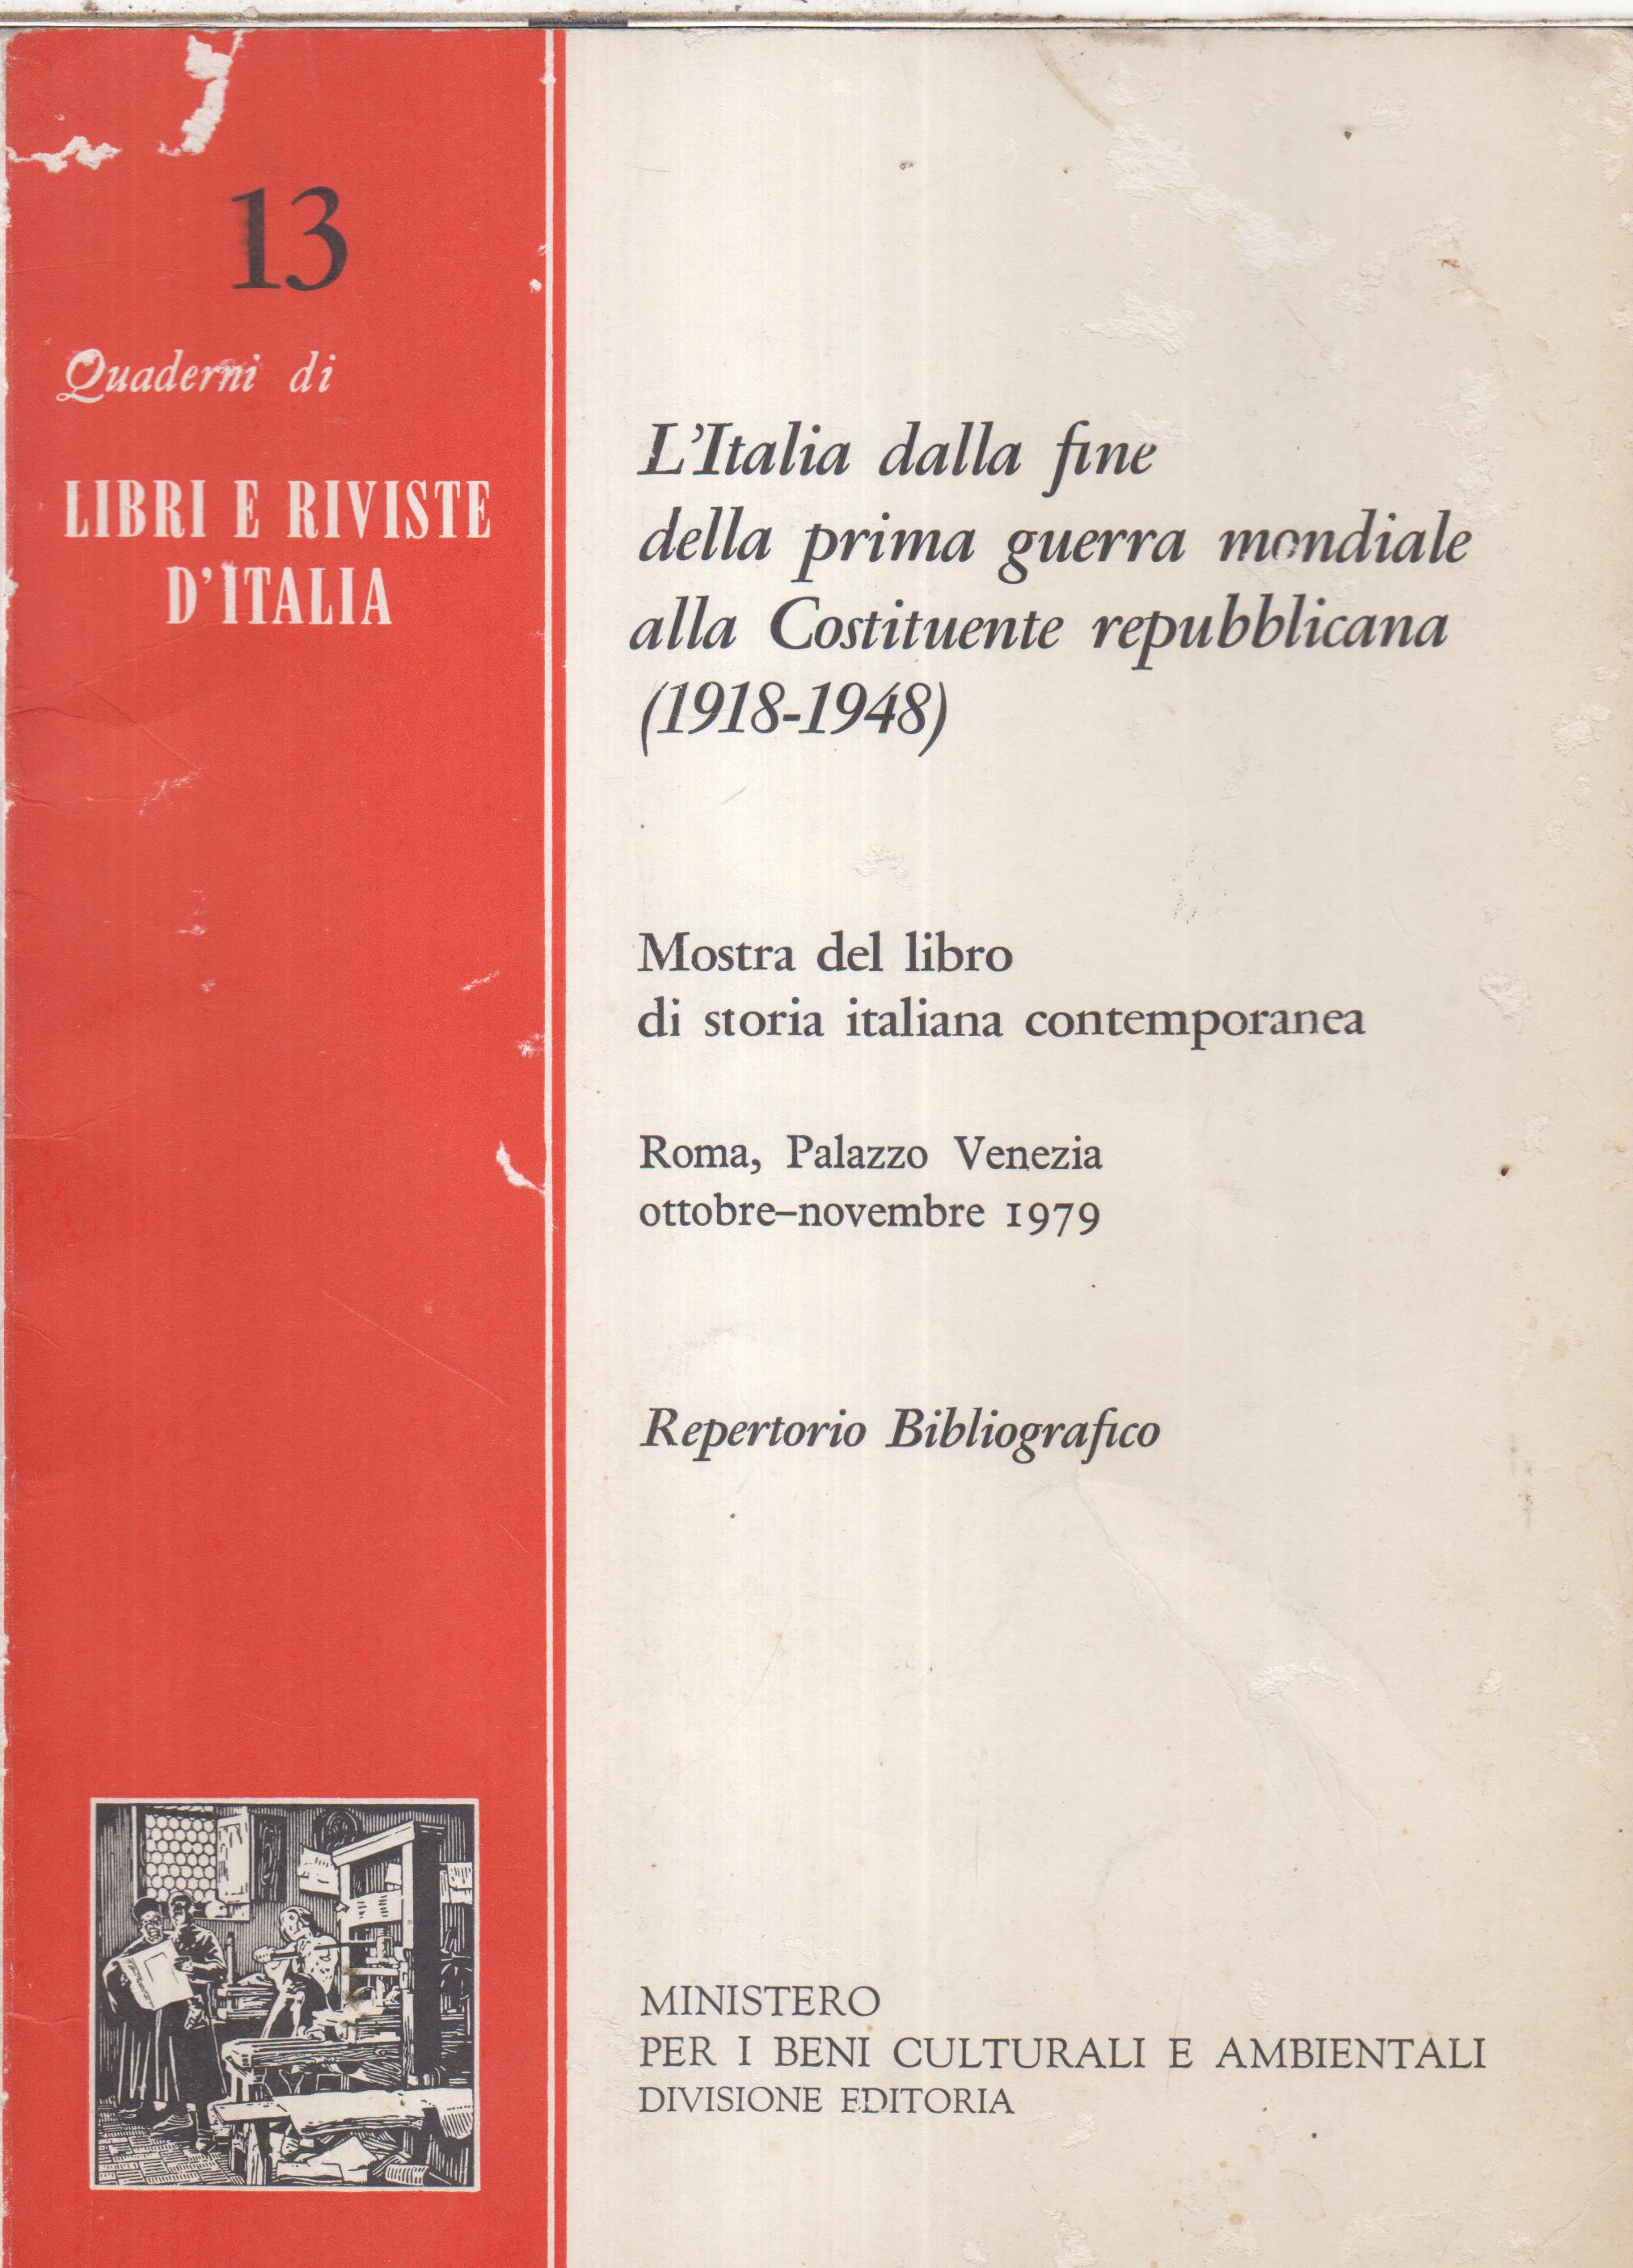 Quaderni di LIBRI E RIVISTE 13. L'italia dalla fine della prima guerra mondiale alla Costituente repubblicana (1918-1948)